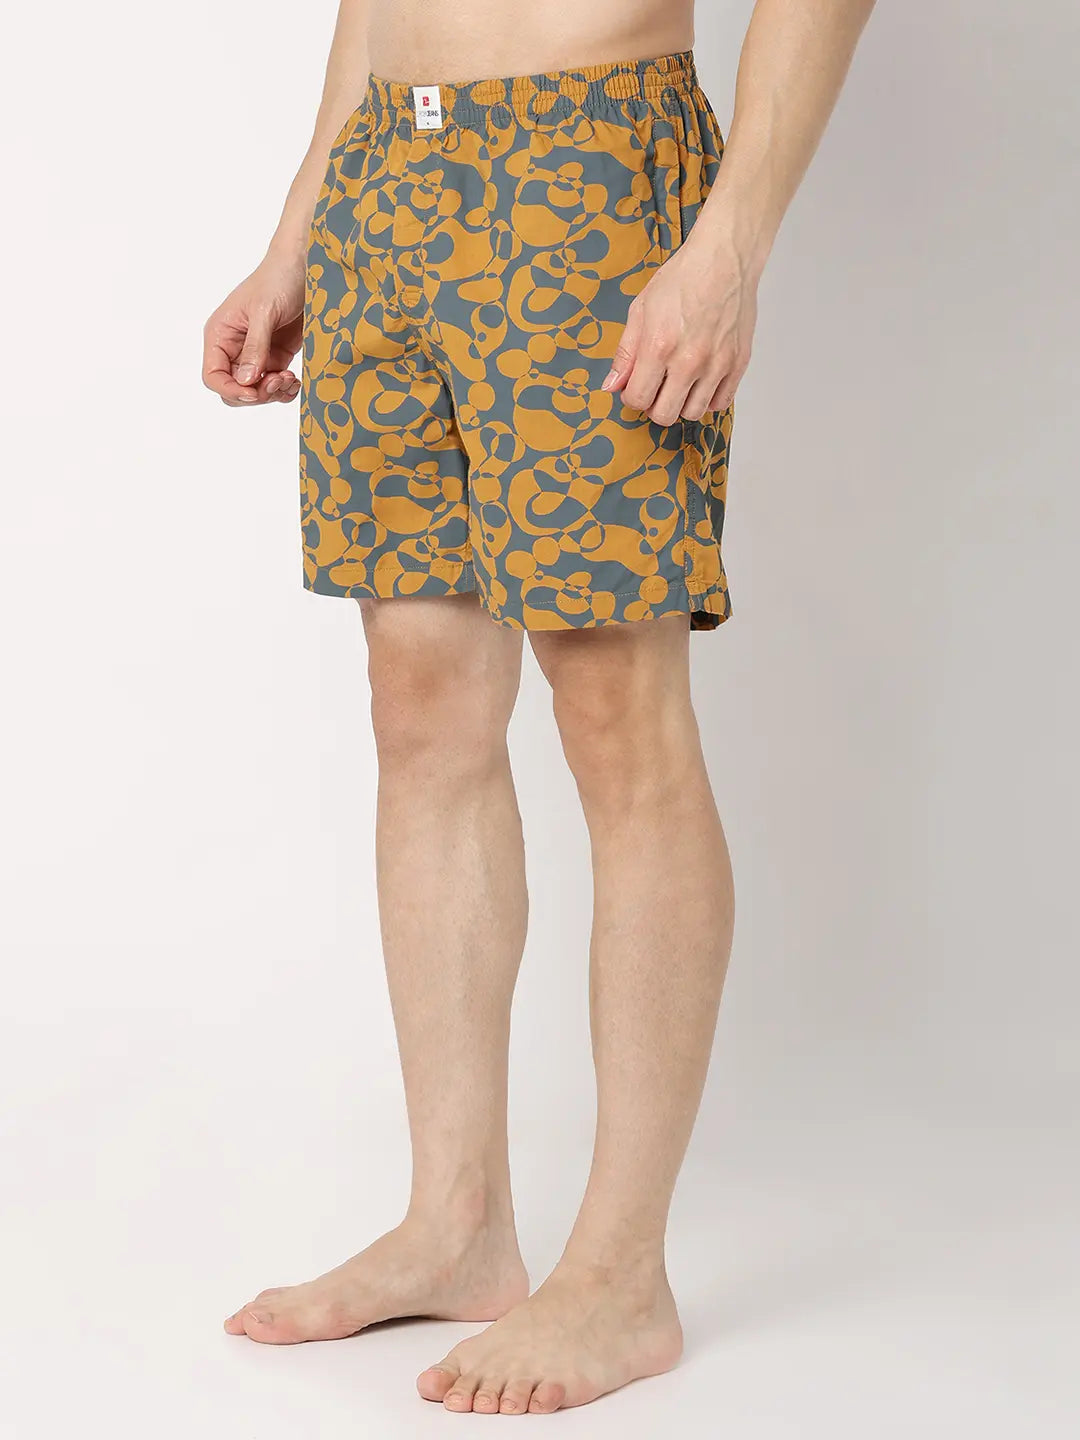 Underjeans by Spykar Men Premium Yellow Cotton Blend Regular Fit Boxer Shorts